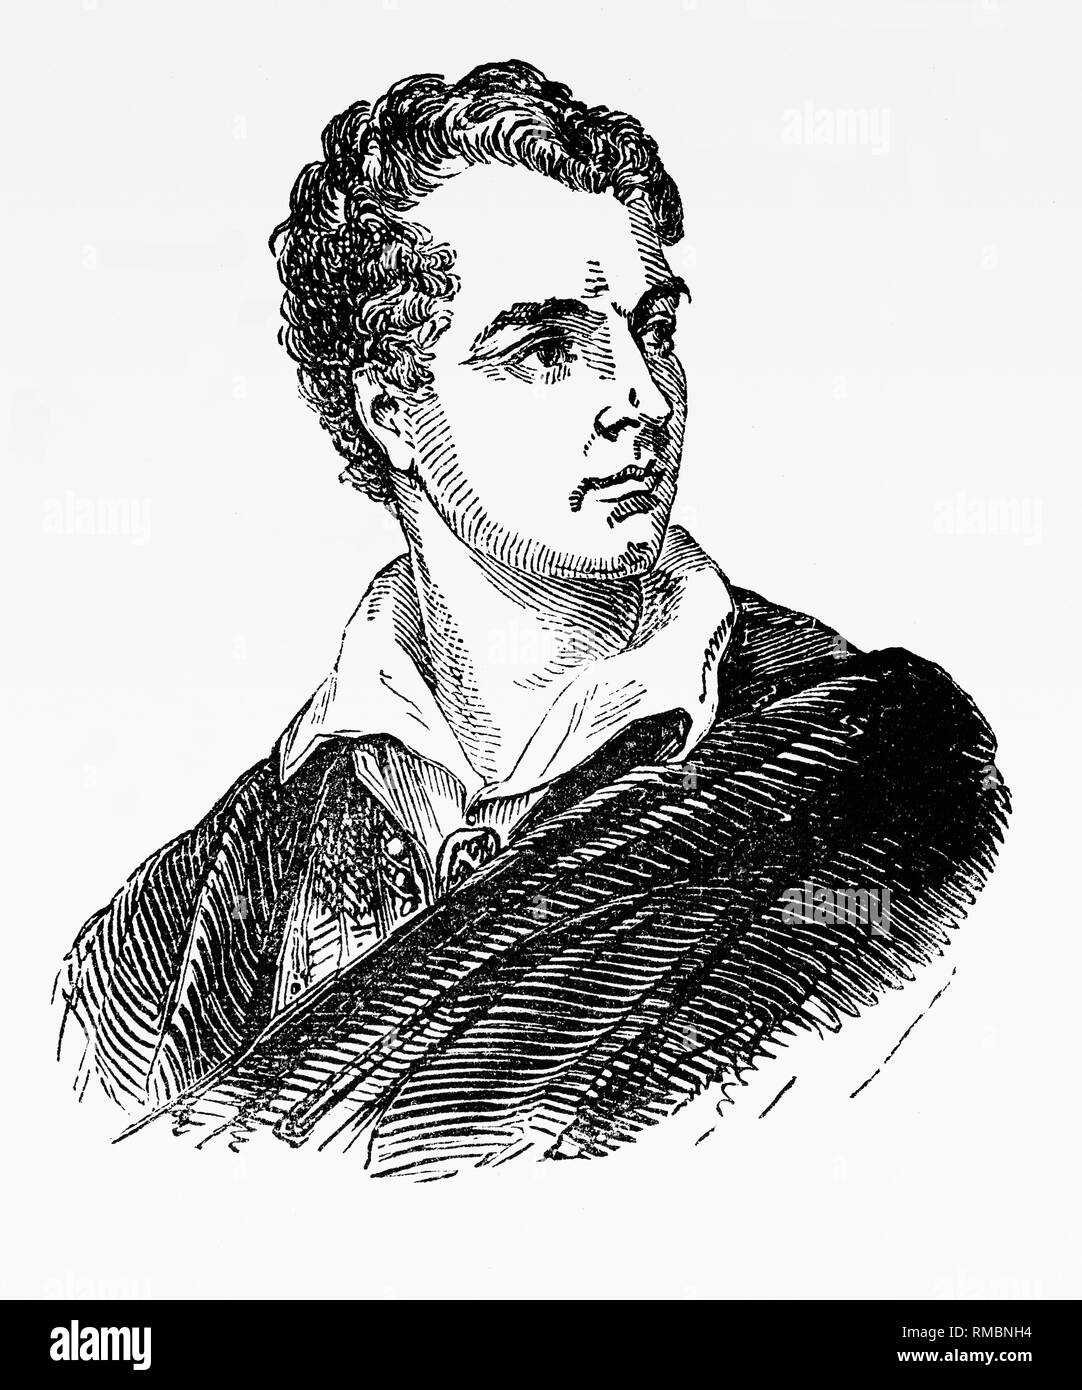 Lord Byron (1788-1824), war ein britischer Dichter, Peer, Politiker und führende Persönlichkeit der romantischen Bewegung. Als einer der größten britischen Dichter betrachtet, er unternahm ausgedehnte Reisen in Europa, besonders in Italien, wo er sieben Jahre häufig seinen Freund und Gefährte Dichter Percy Bysshe Shelley, lebte. Er starb 1824 im Alter von 36 Jahren von einem Fieber in Missolonghi starb während der griechischen Unabhängigkeitskrieg unter Vertrag genommen. Byron gilt als die erste moderne zu sein Stil Berühmtheit, die Personifizierung der Byronic Hero, dass seine Frau Annabella namens 'Byromania'. Stockfoto